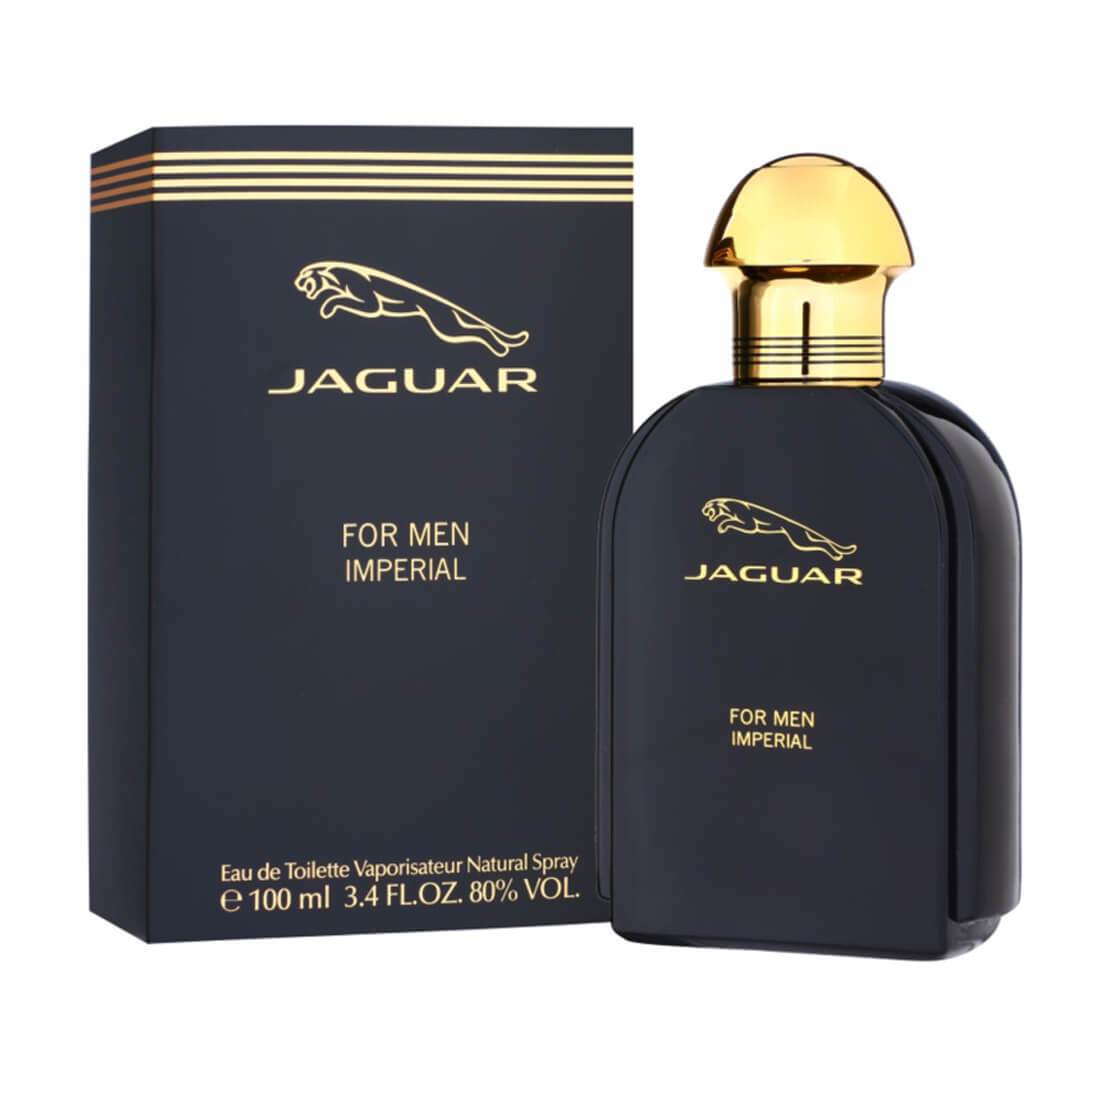 Jaguar Imperial EDT Perfume For Men - 100ml